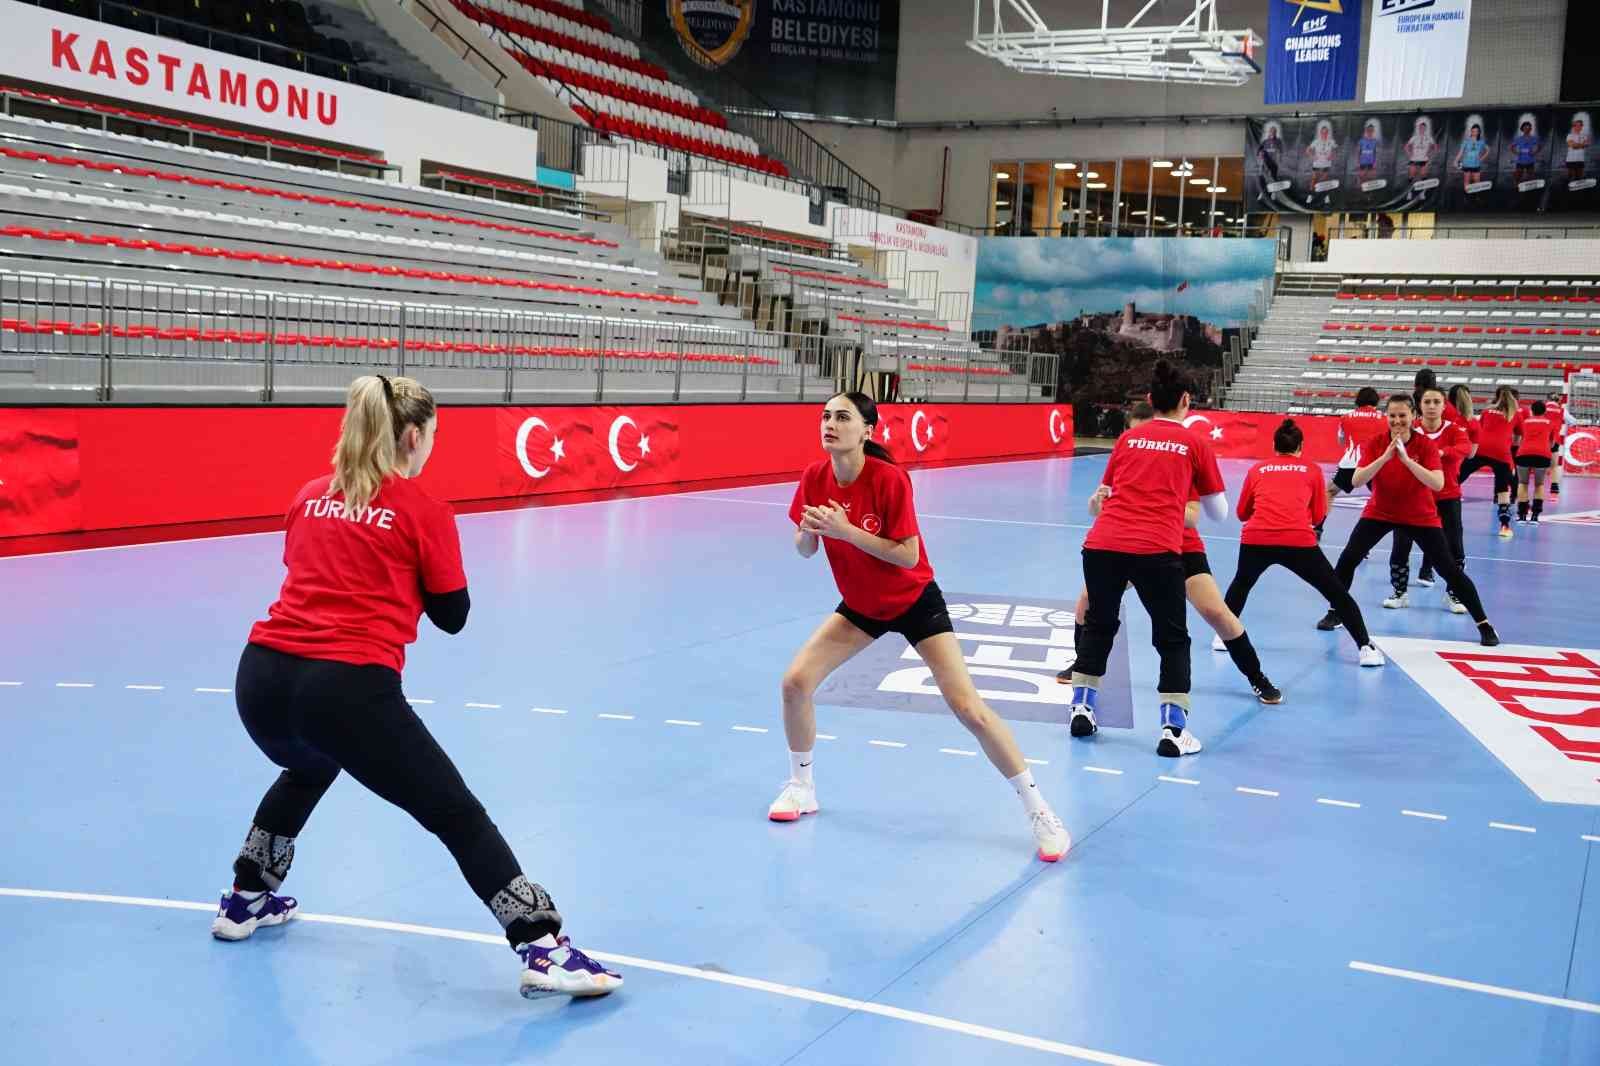 A Milli Kadın Hentbol Takımı, İzlanda maçı hazırlıklarına başladı #kastamonu